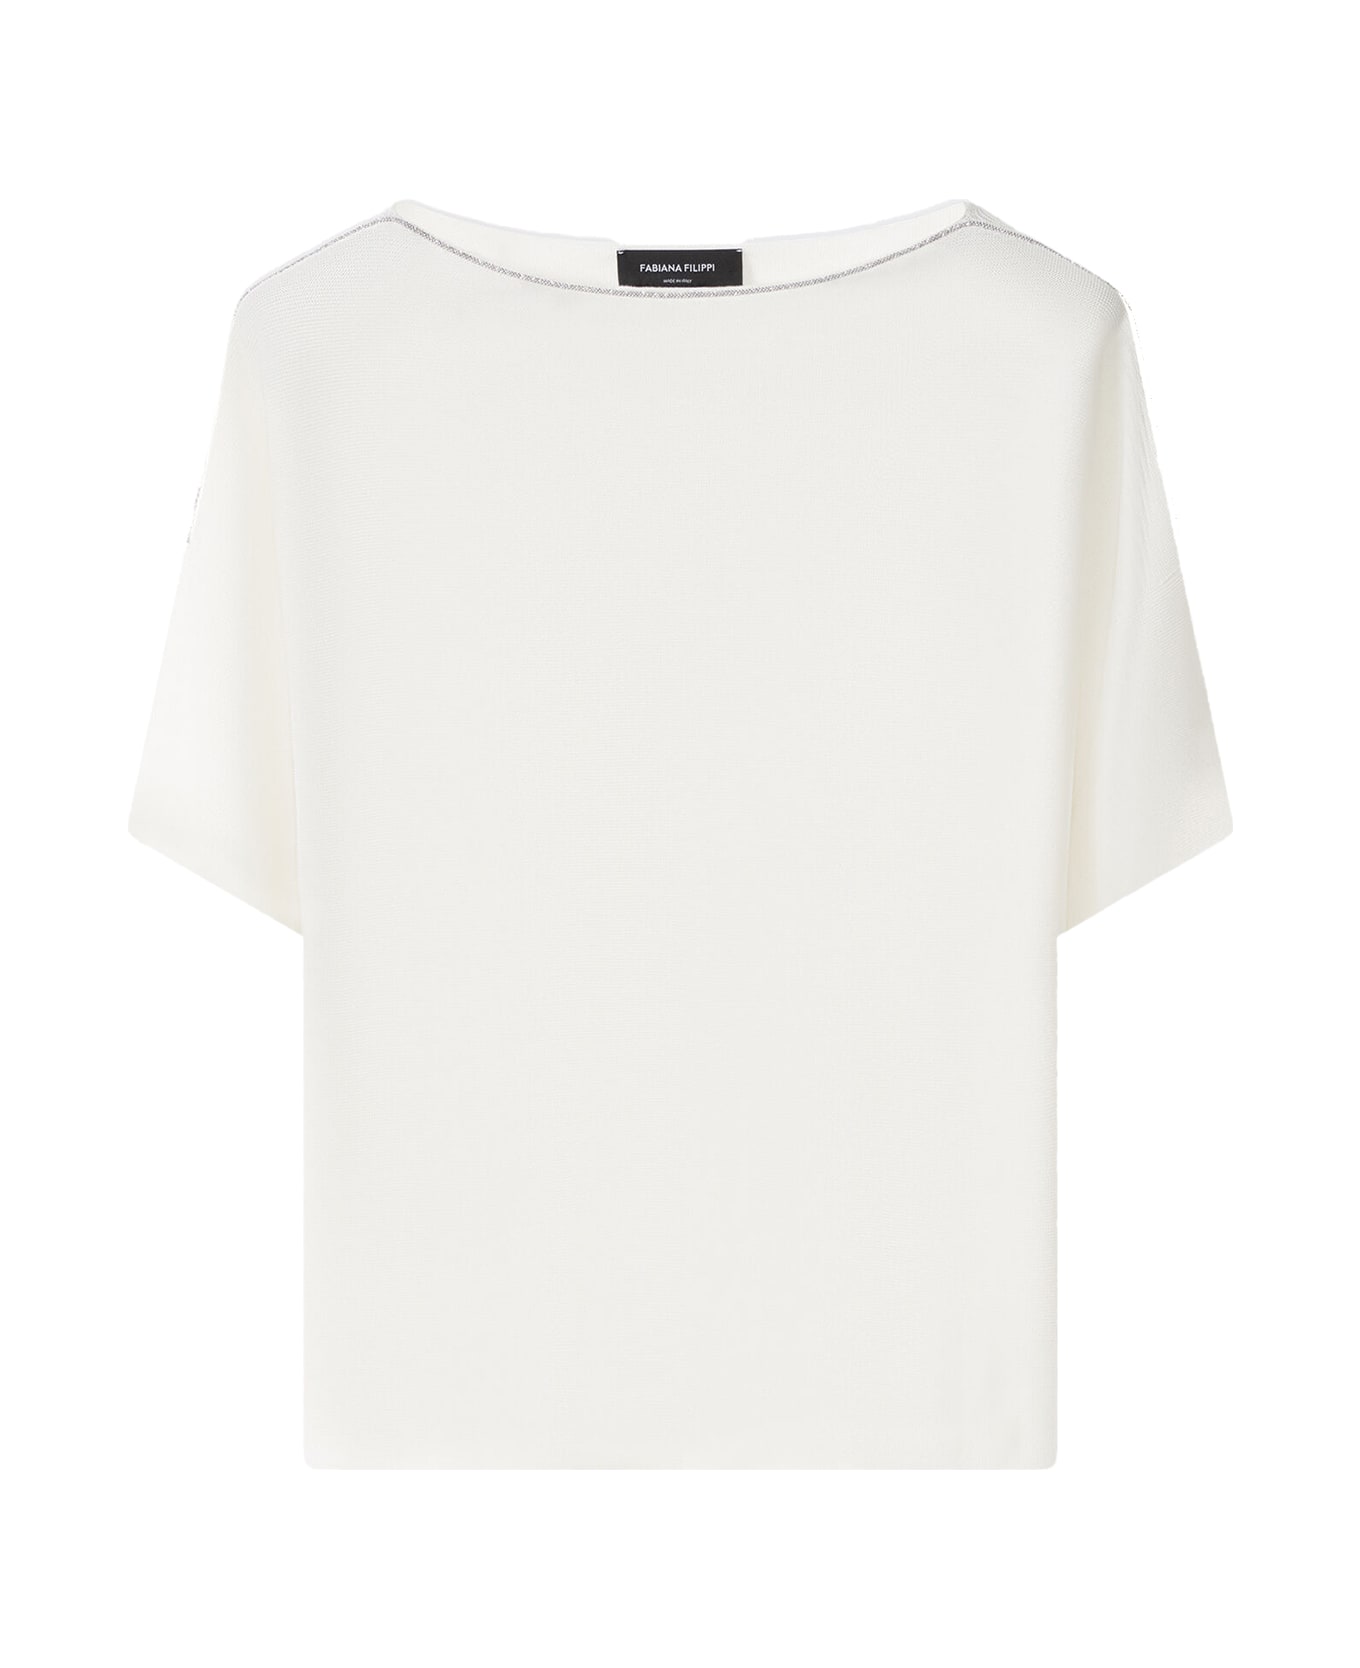 Fabiana Filippi White Organic Cotton T-shirt - BIANCO OTTICO